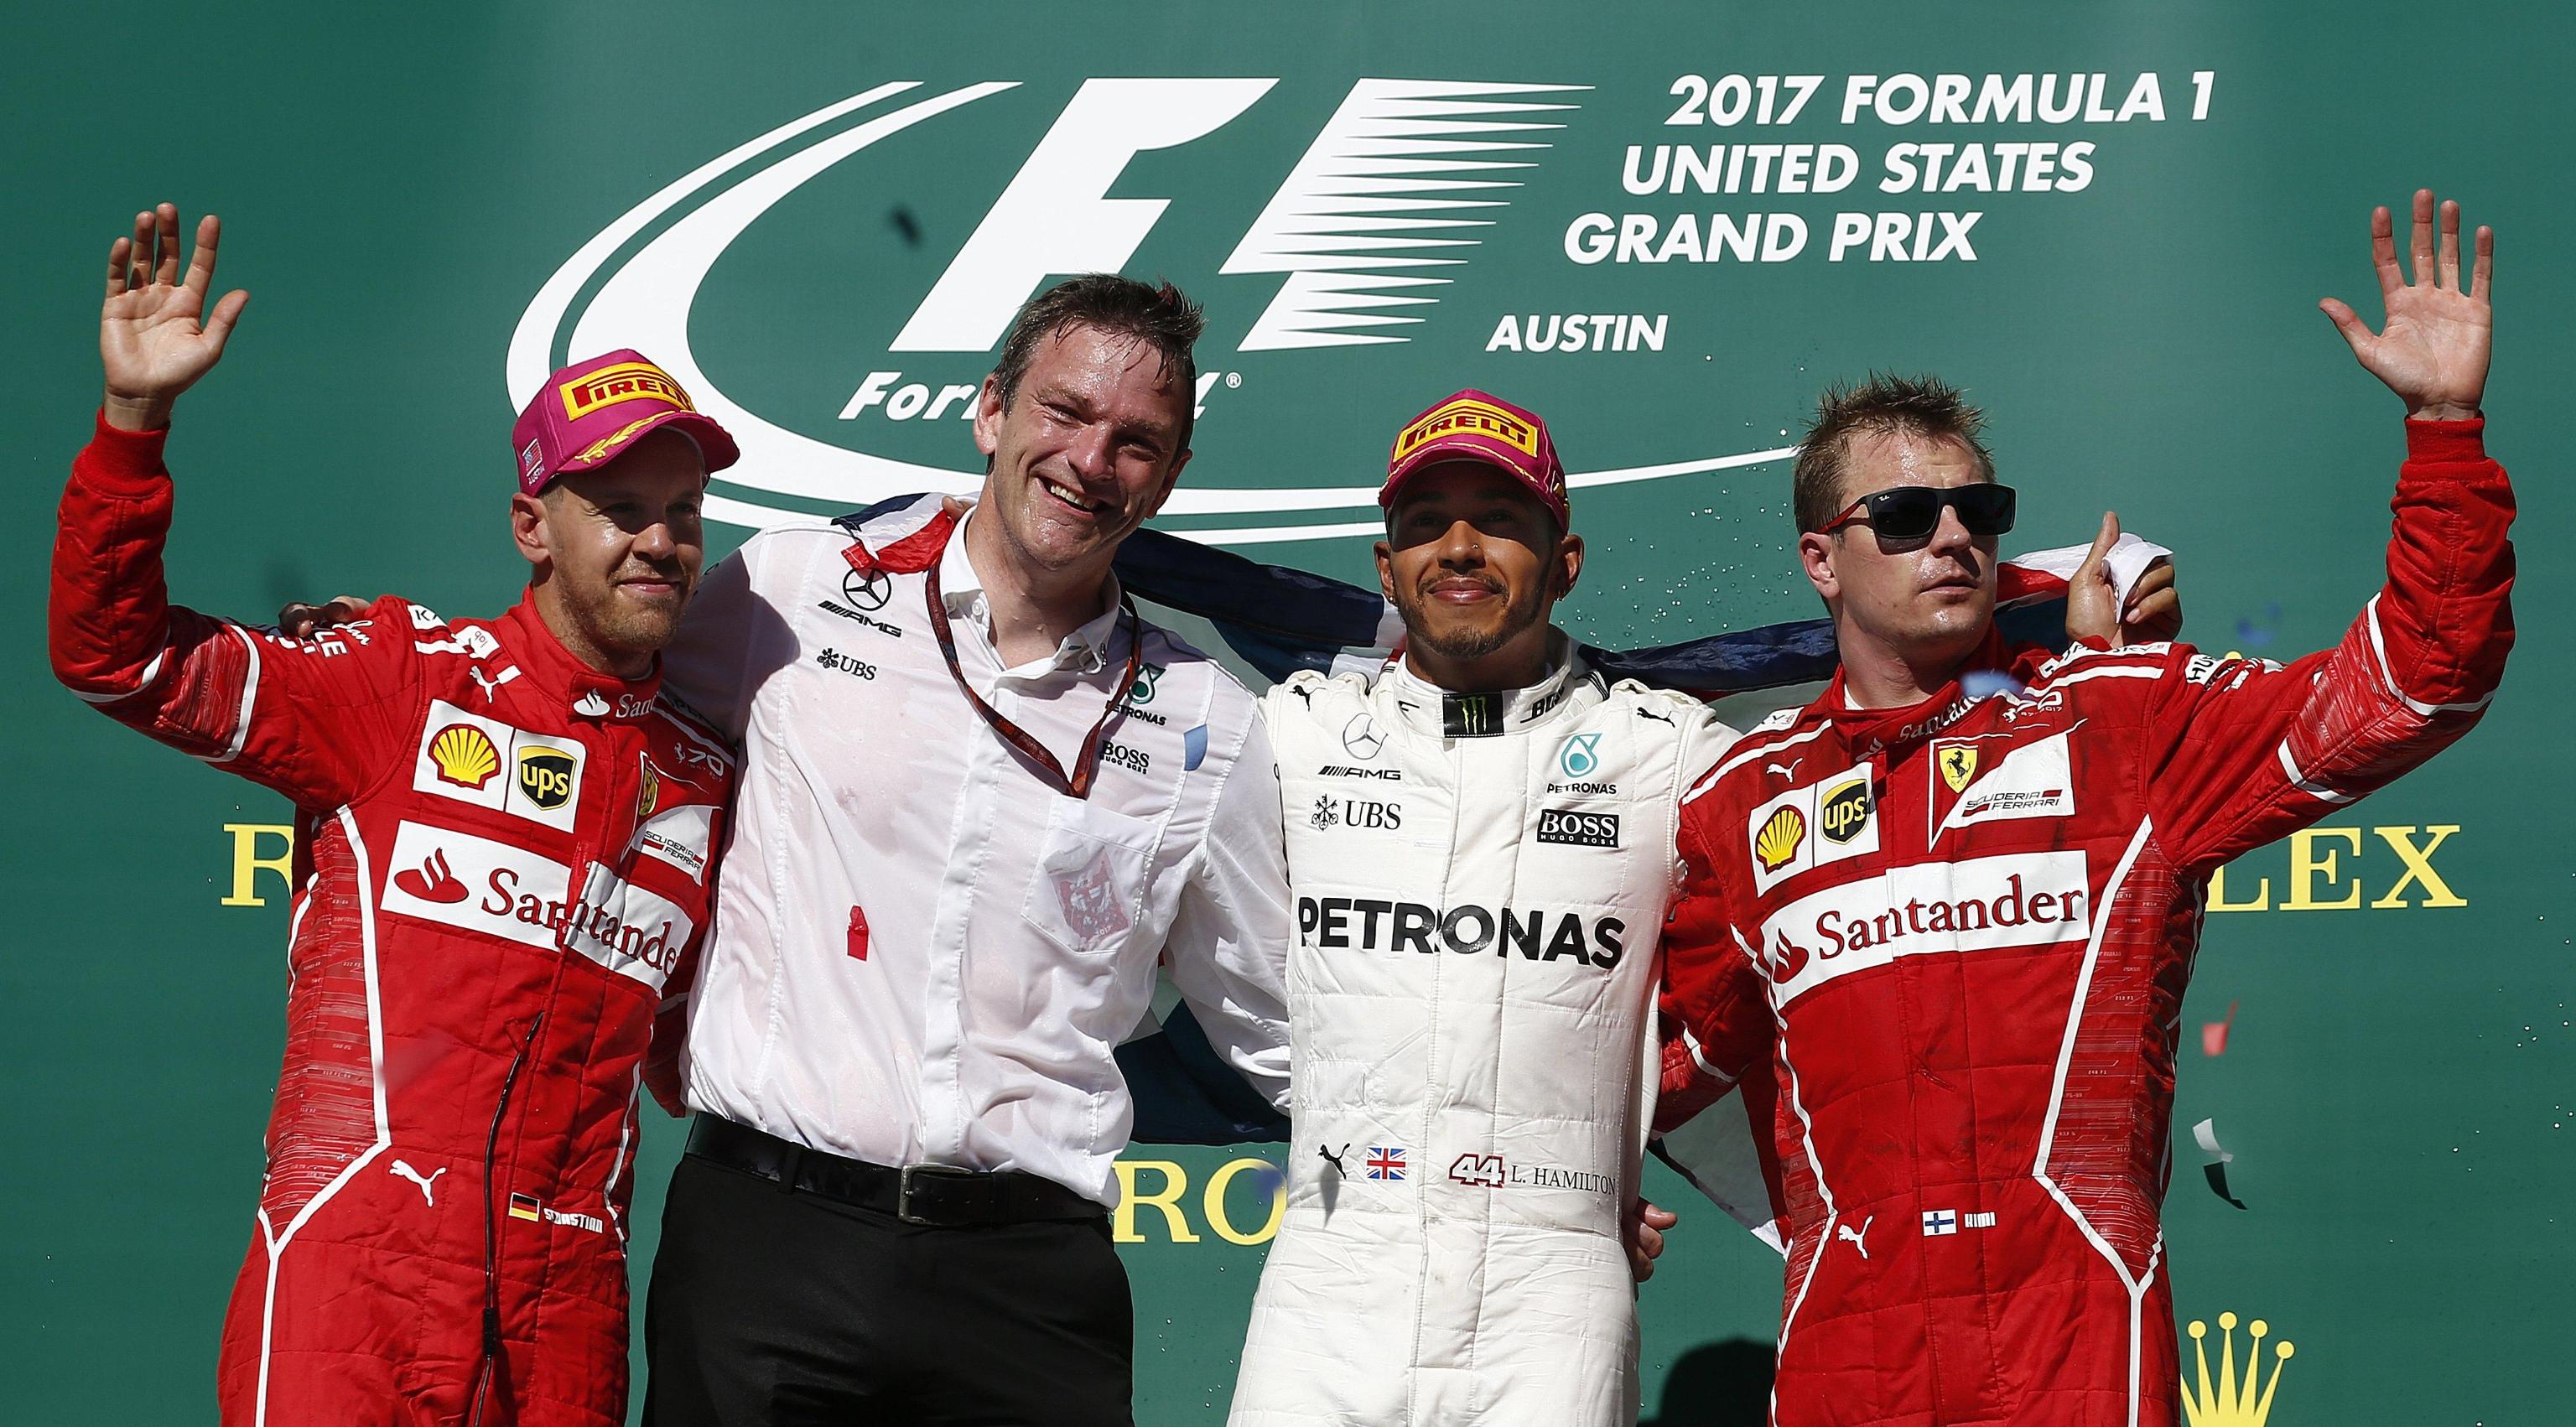 Il podio del Gran Prix delle Americhe di Austin, Texas: da sinistra Sebastian Vettel, secondo in classifica per la Ferrari; il tecnico Mercedes James Allison; il campione Lewis Hamilton, primo posto con la Mercedes, e il terzo in classifica Kimi Raikkonen, della scuderia di Maranello